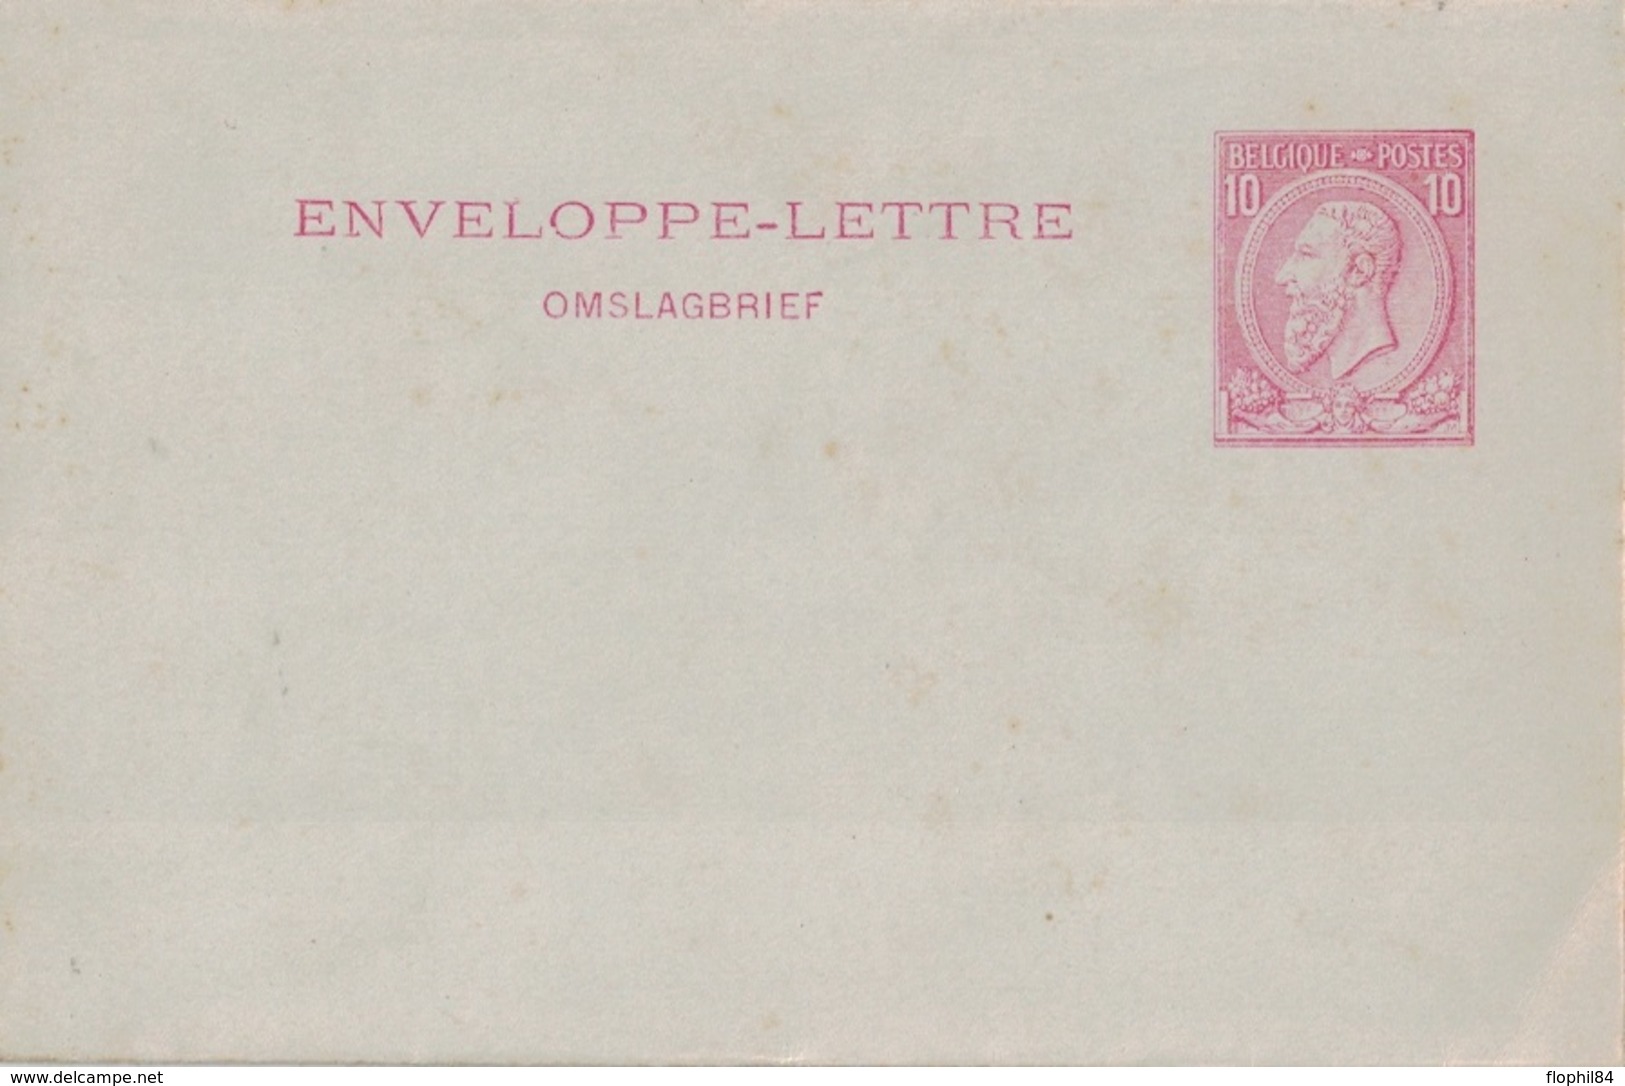 BELGIQUE - ENVELOPPE LETTRE - 10c ROUGE. - Letter Covers